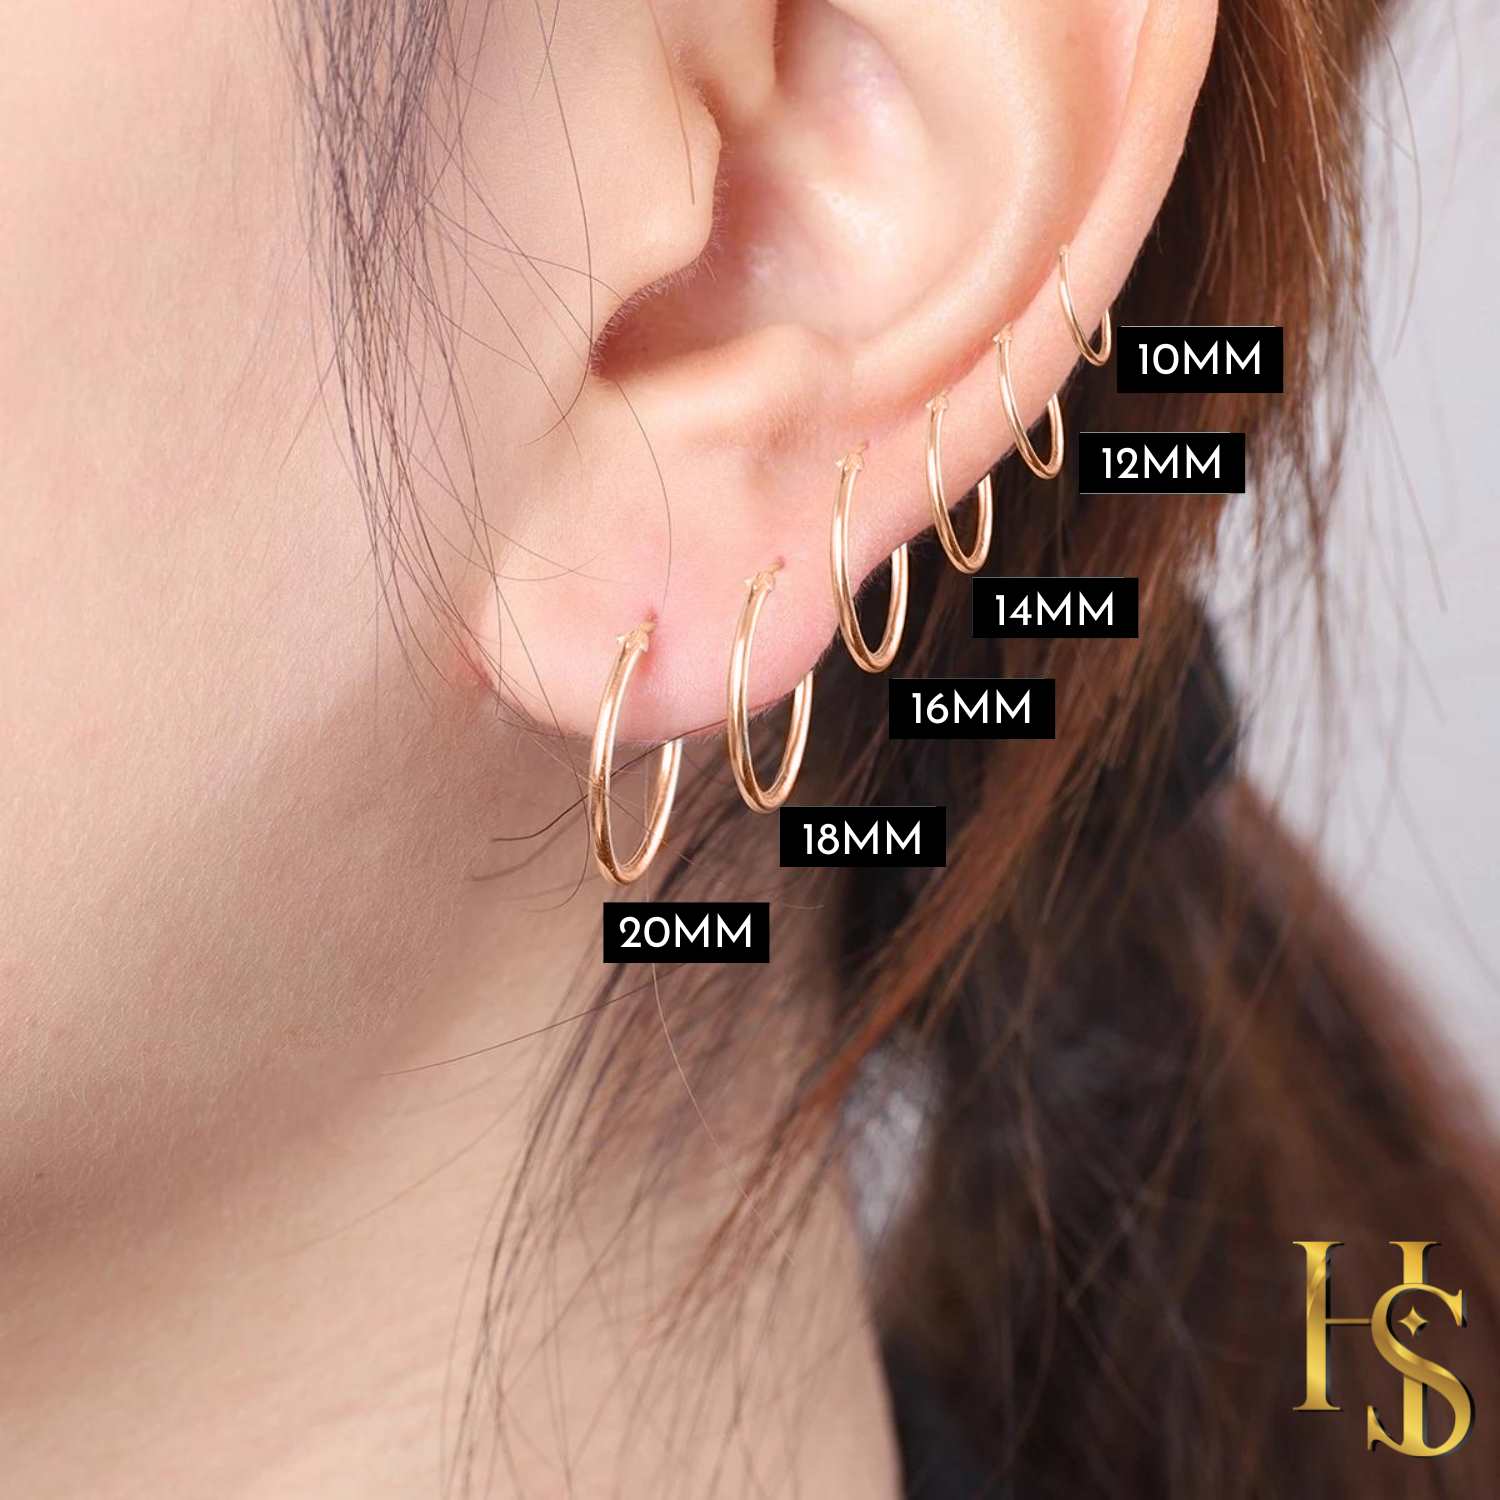 Buy Rose Gold Earrings for Women by Pc Jeweller Online  Ajiocom